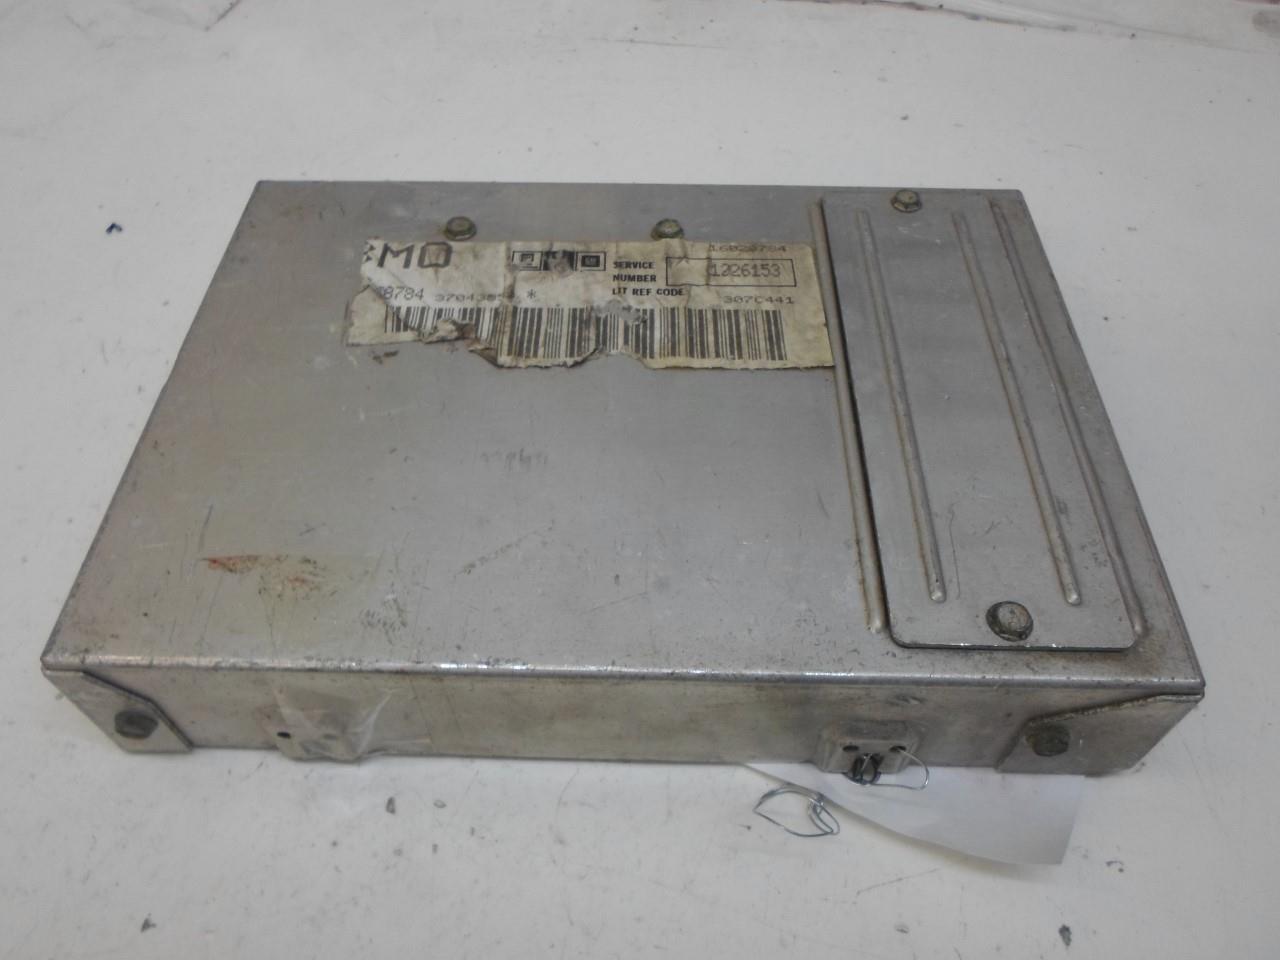 ENGINE COMPUTER PONTIAC BONNEVILLE 1983 1226153 ECM PCM ... 1983 buick century fuse box 